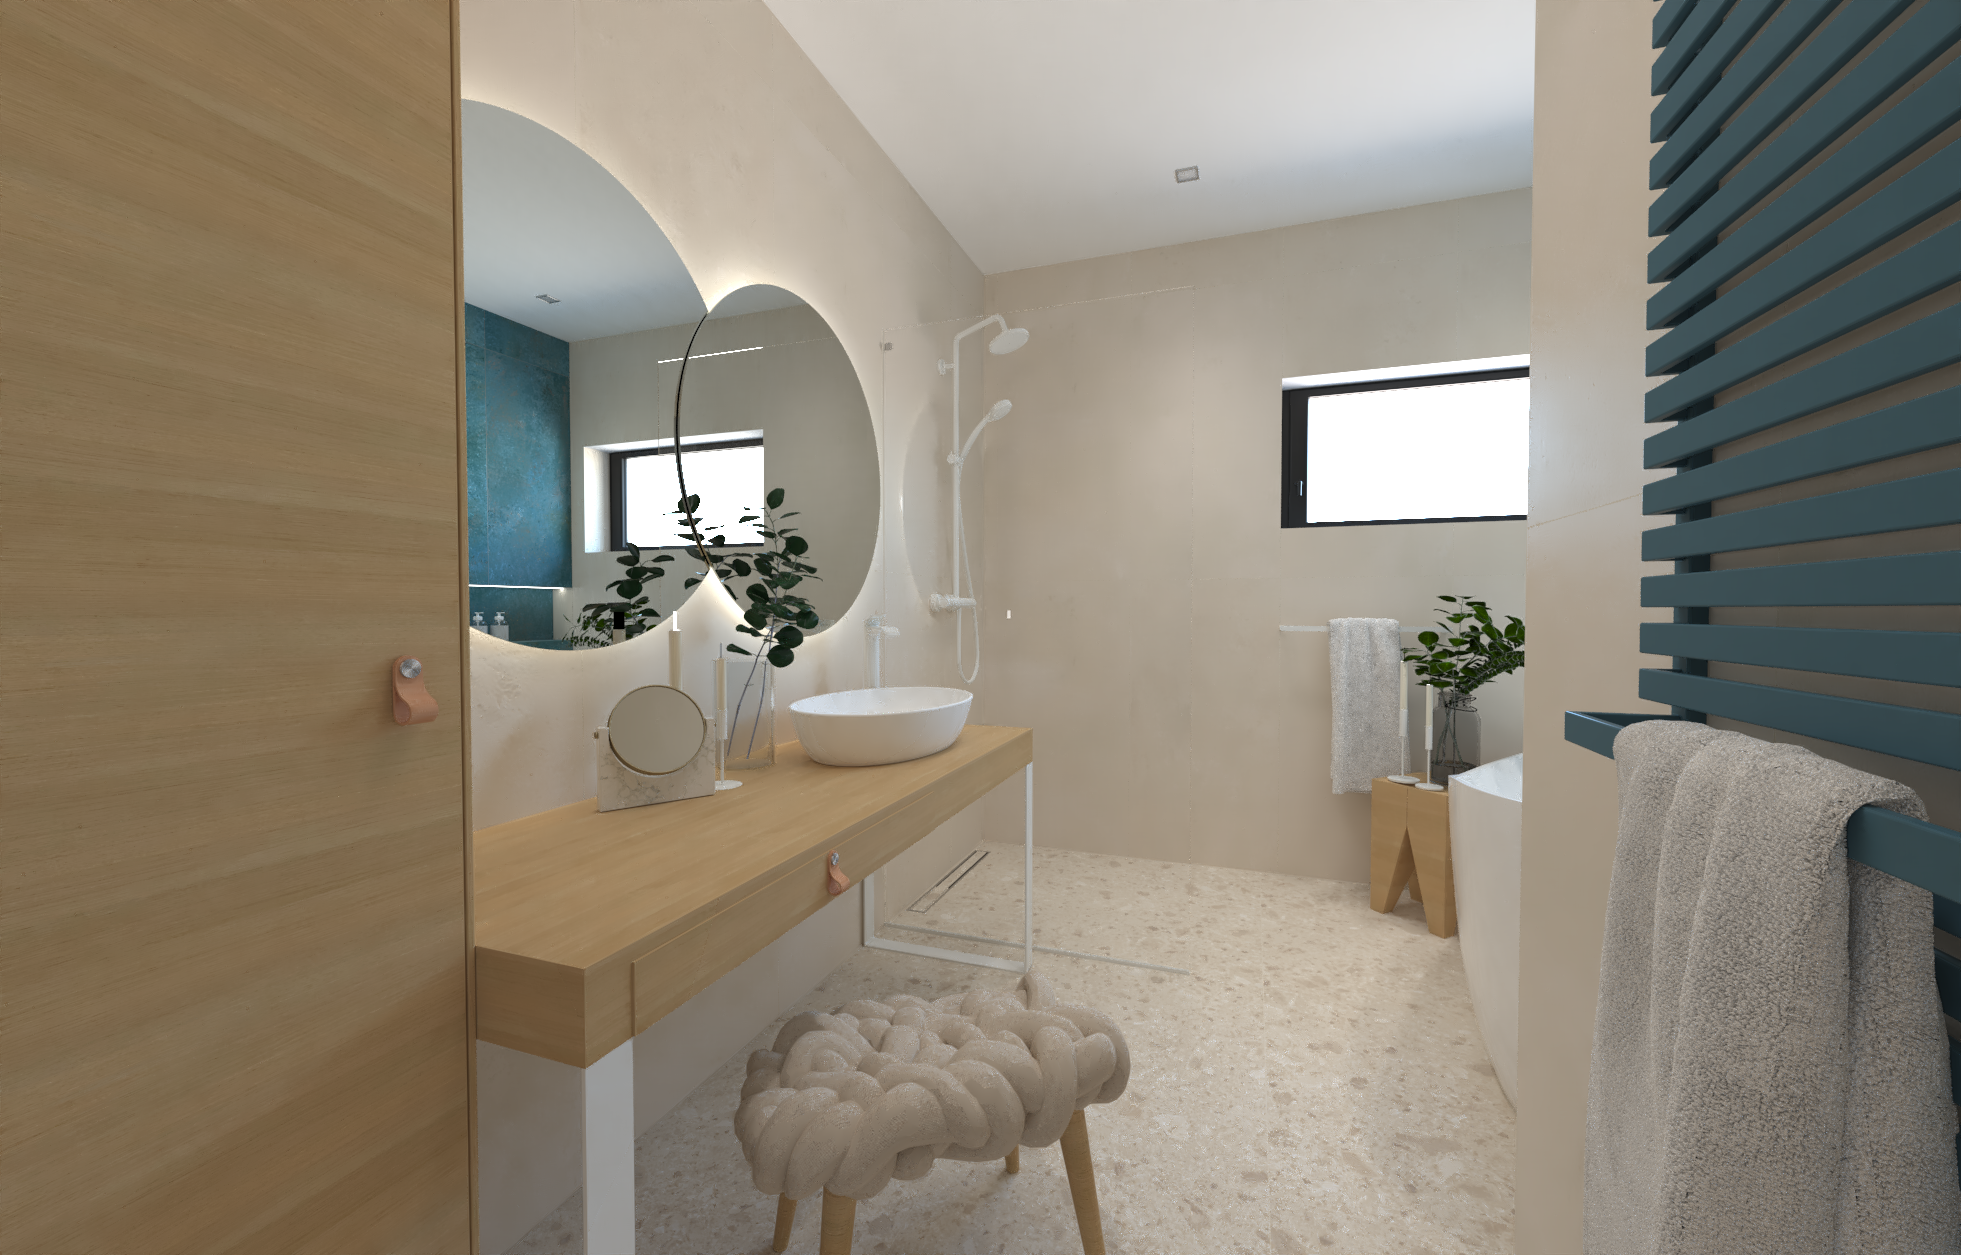 Návrh svěží koupelny s tyrkysovým akcentem – obklady v imitaci betonu, kamene i kovu, volně stojící vana a designové doplňky 1